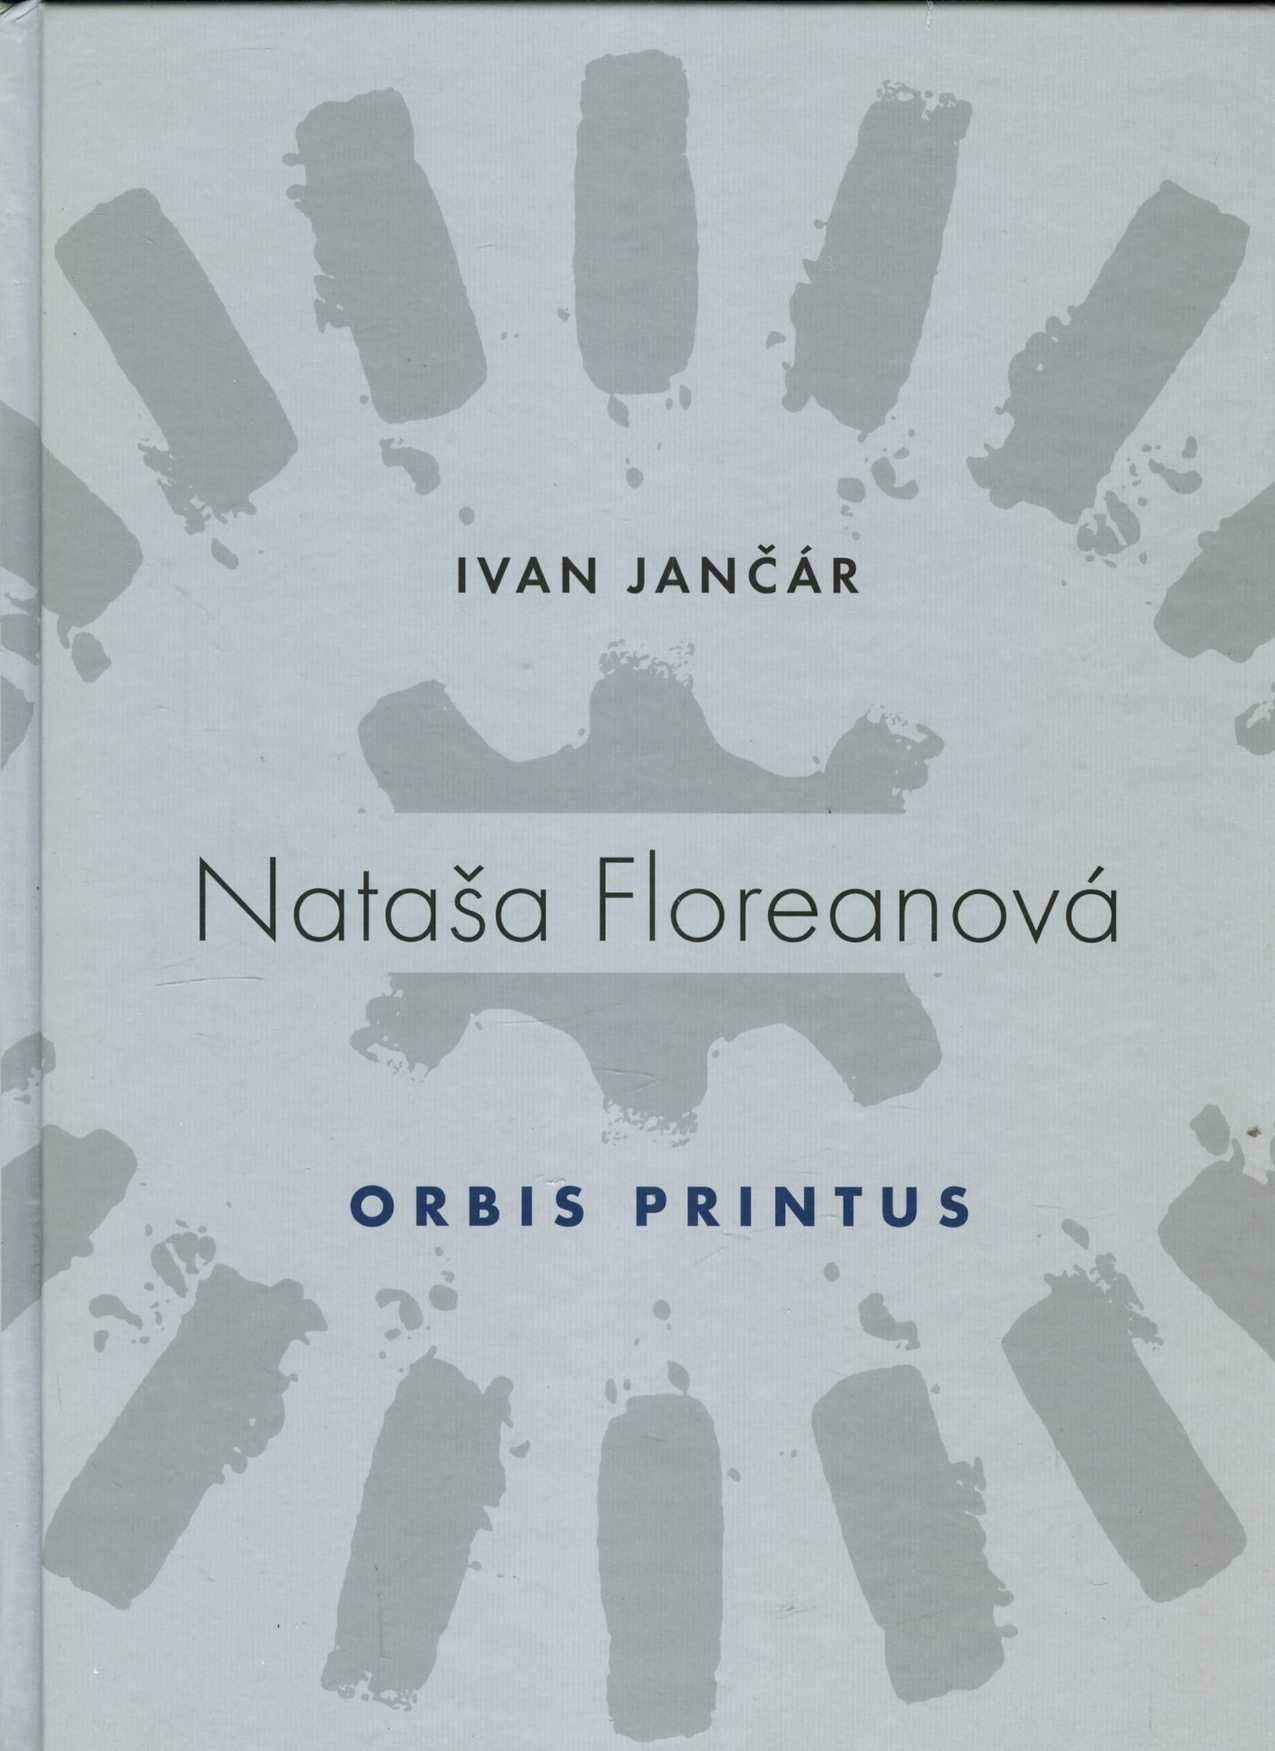 Nataša Floreanová - Orbis Printus (Ivan Jančár)